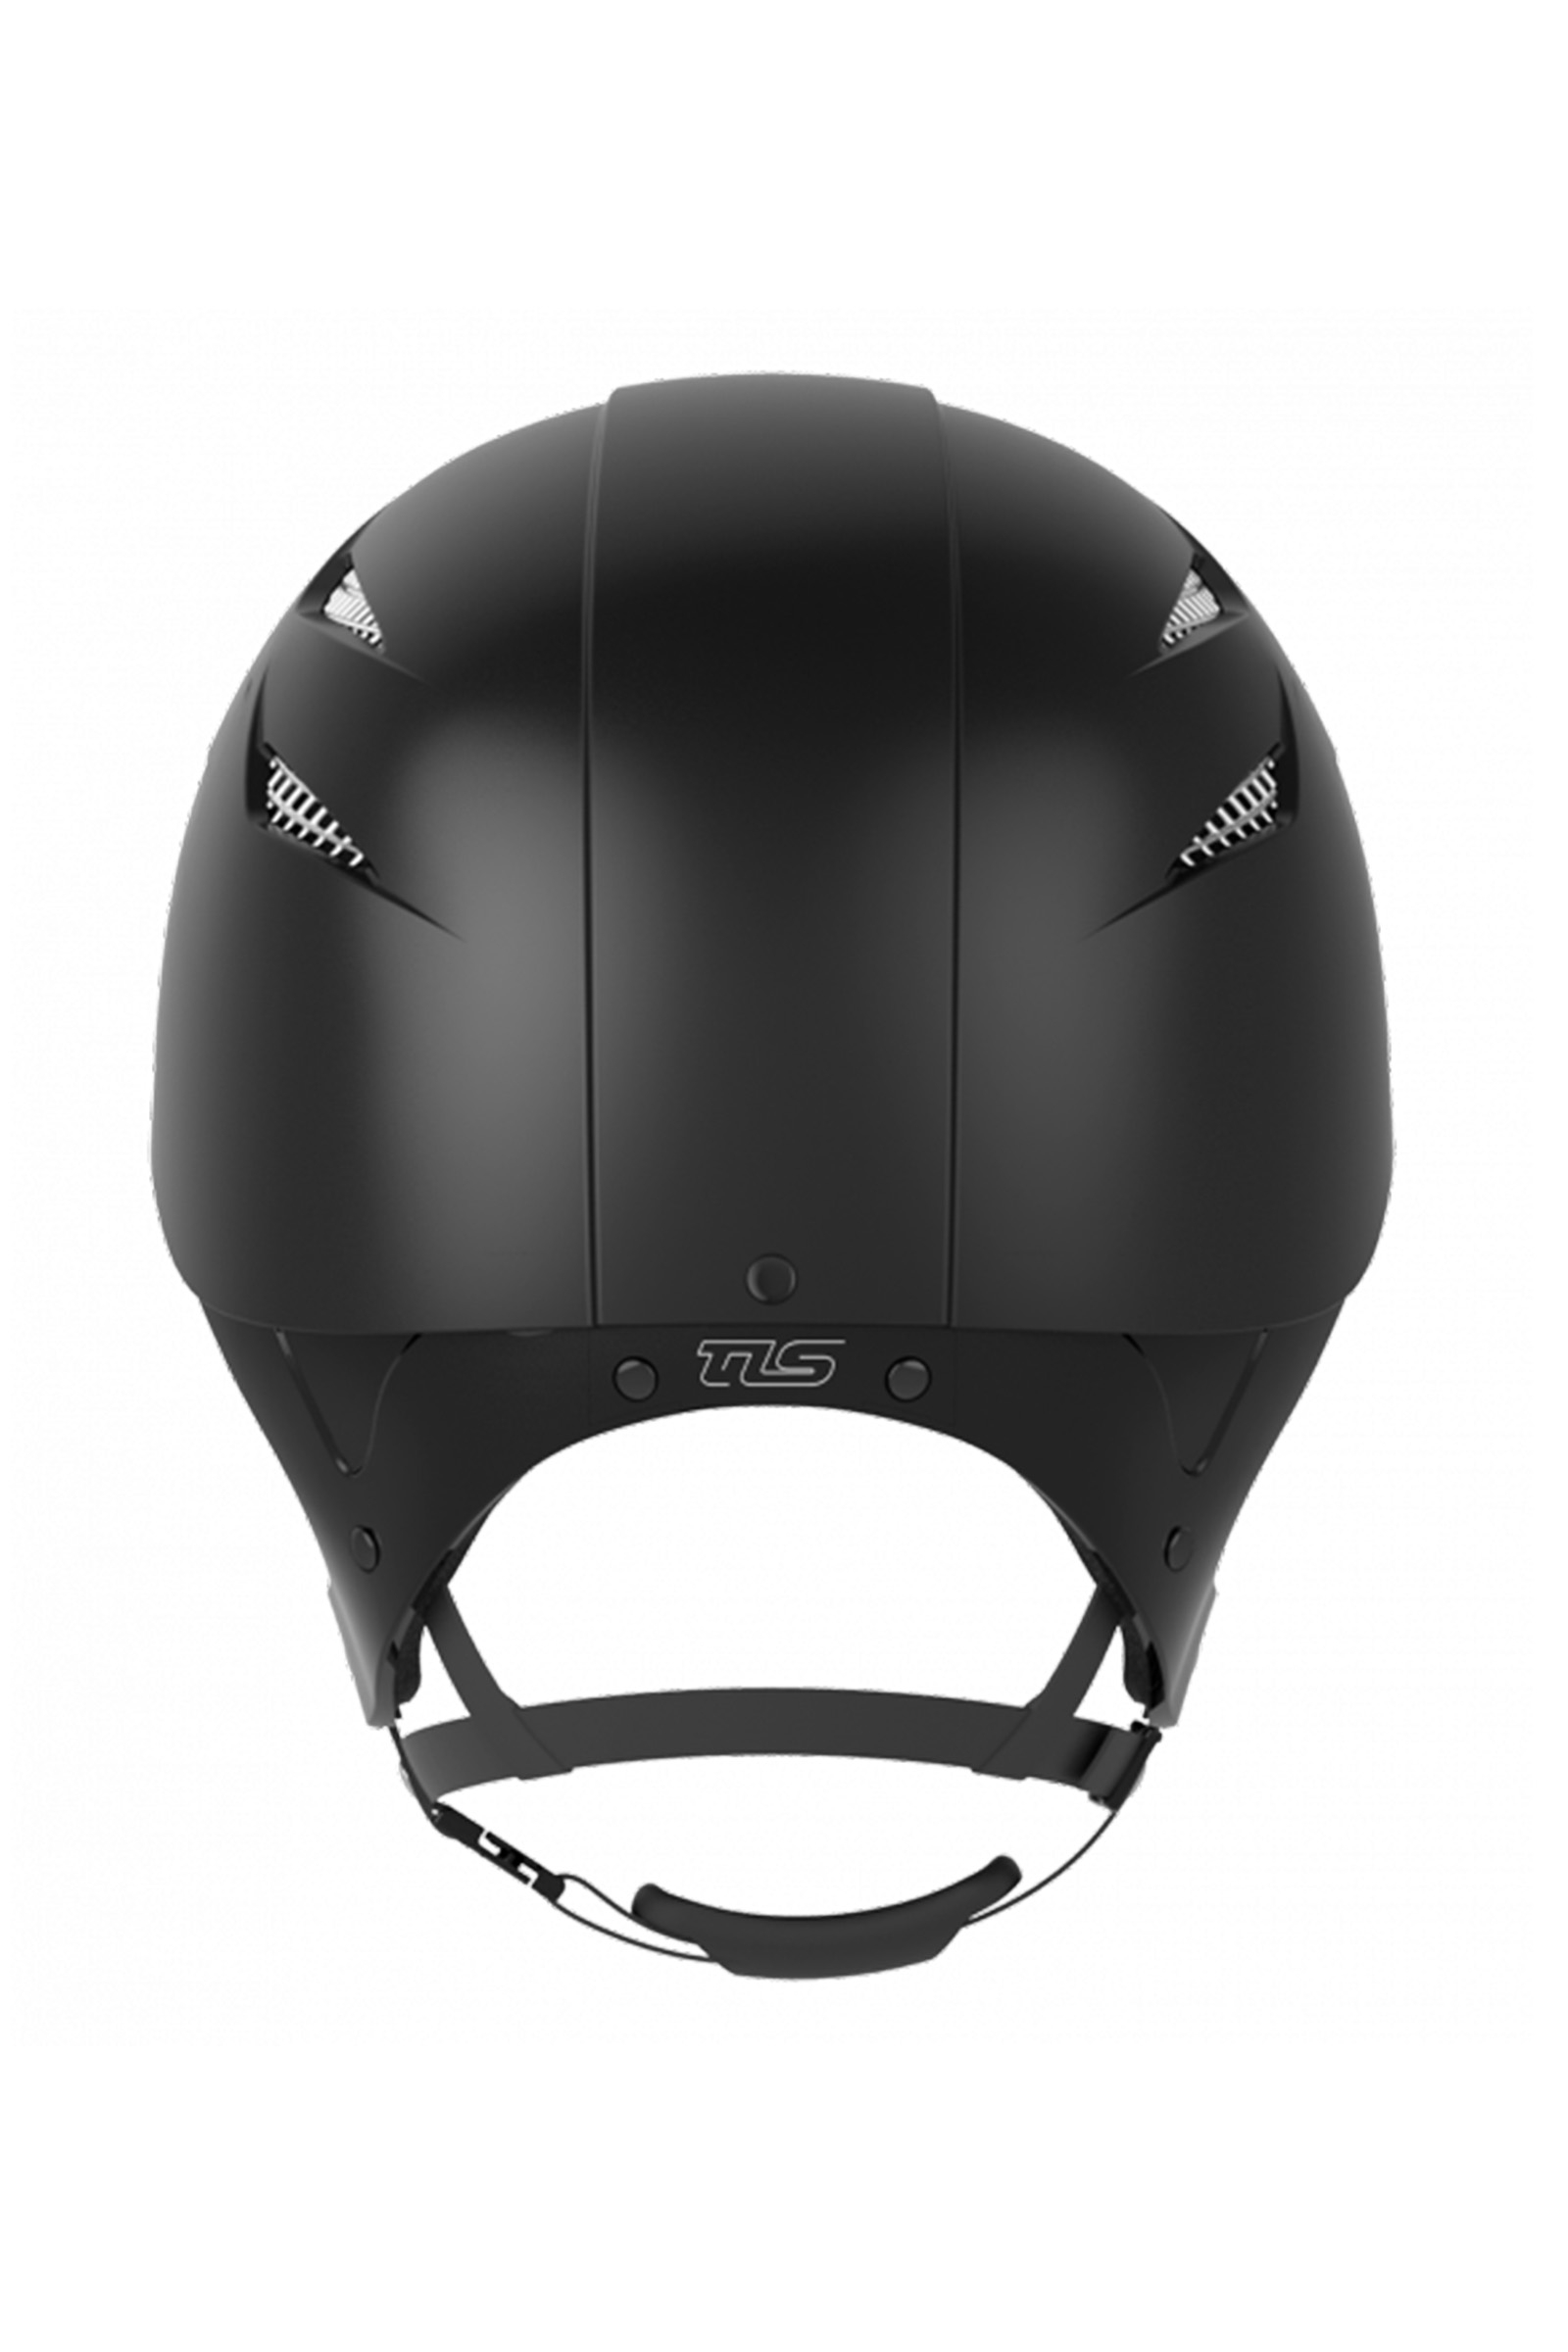 Buy GPA Easy Speed Air TLS Riding Helmet